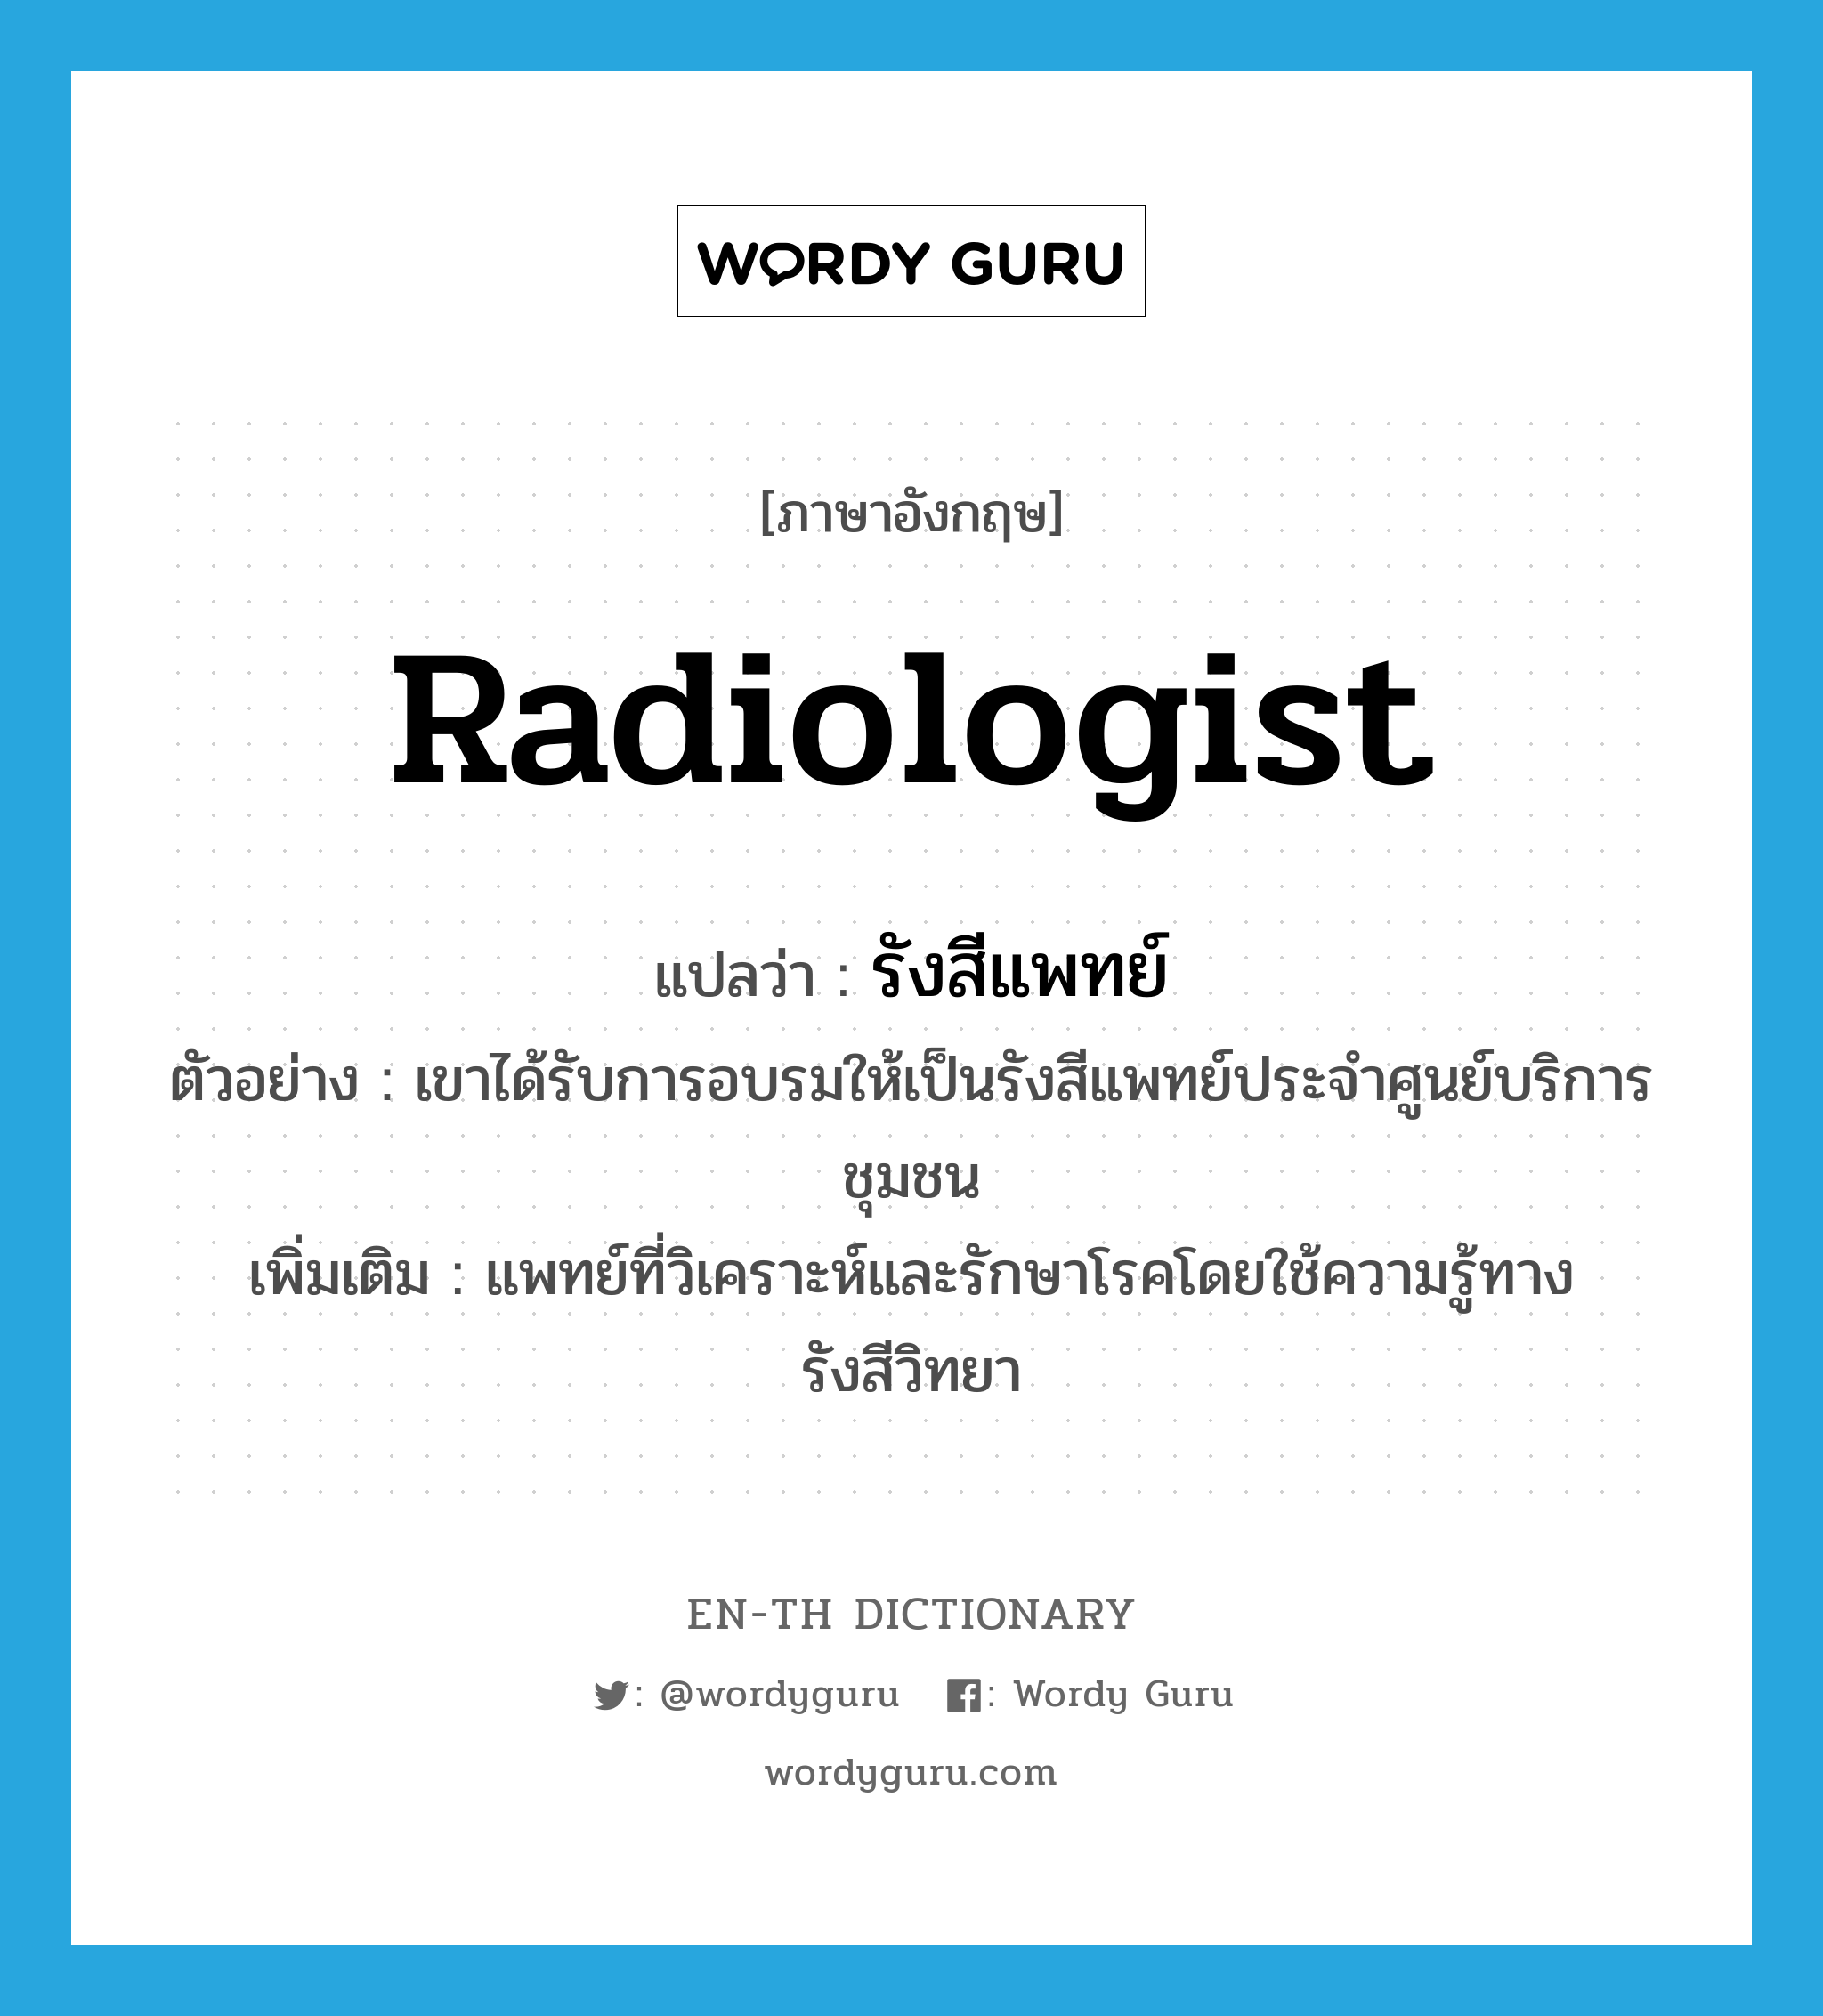 radiologist แปลว่า?, คำศัพท์ภาษาอังกฤษ radiologist แปลว่า รังสีแพทย์ ประเภท N ตัวอย่าง เขาได้รับการอบรมให้เป็นรังสีแพทย์ประจำศูนย์บริการชุมชน เพิ่มเติม แพทย์ที่วิเคราะห์และรักษาโรคโดยใช้ความรู้ทางรังสีวิทยา หมวด N